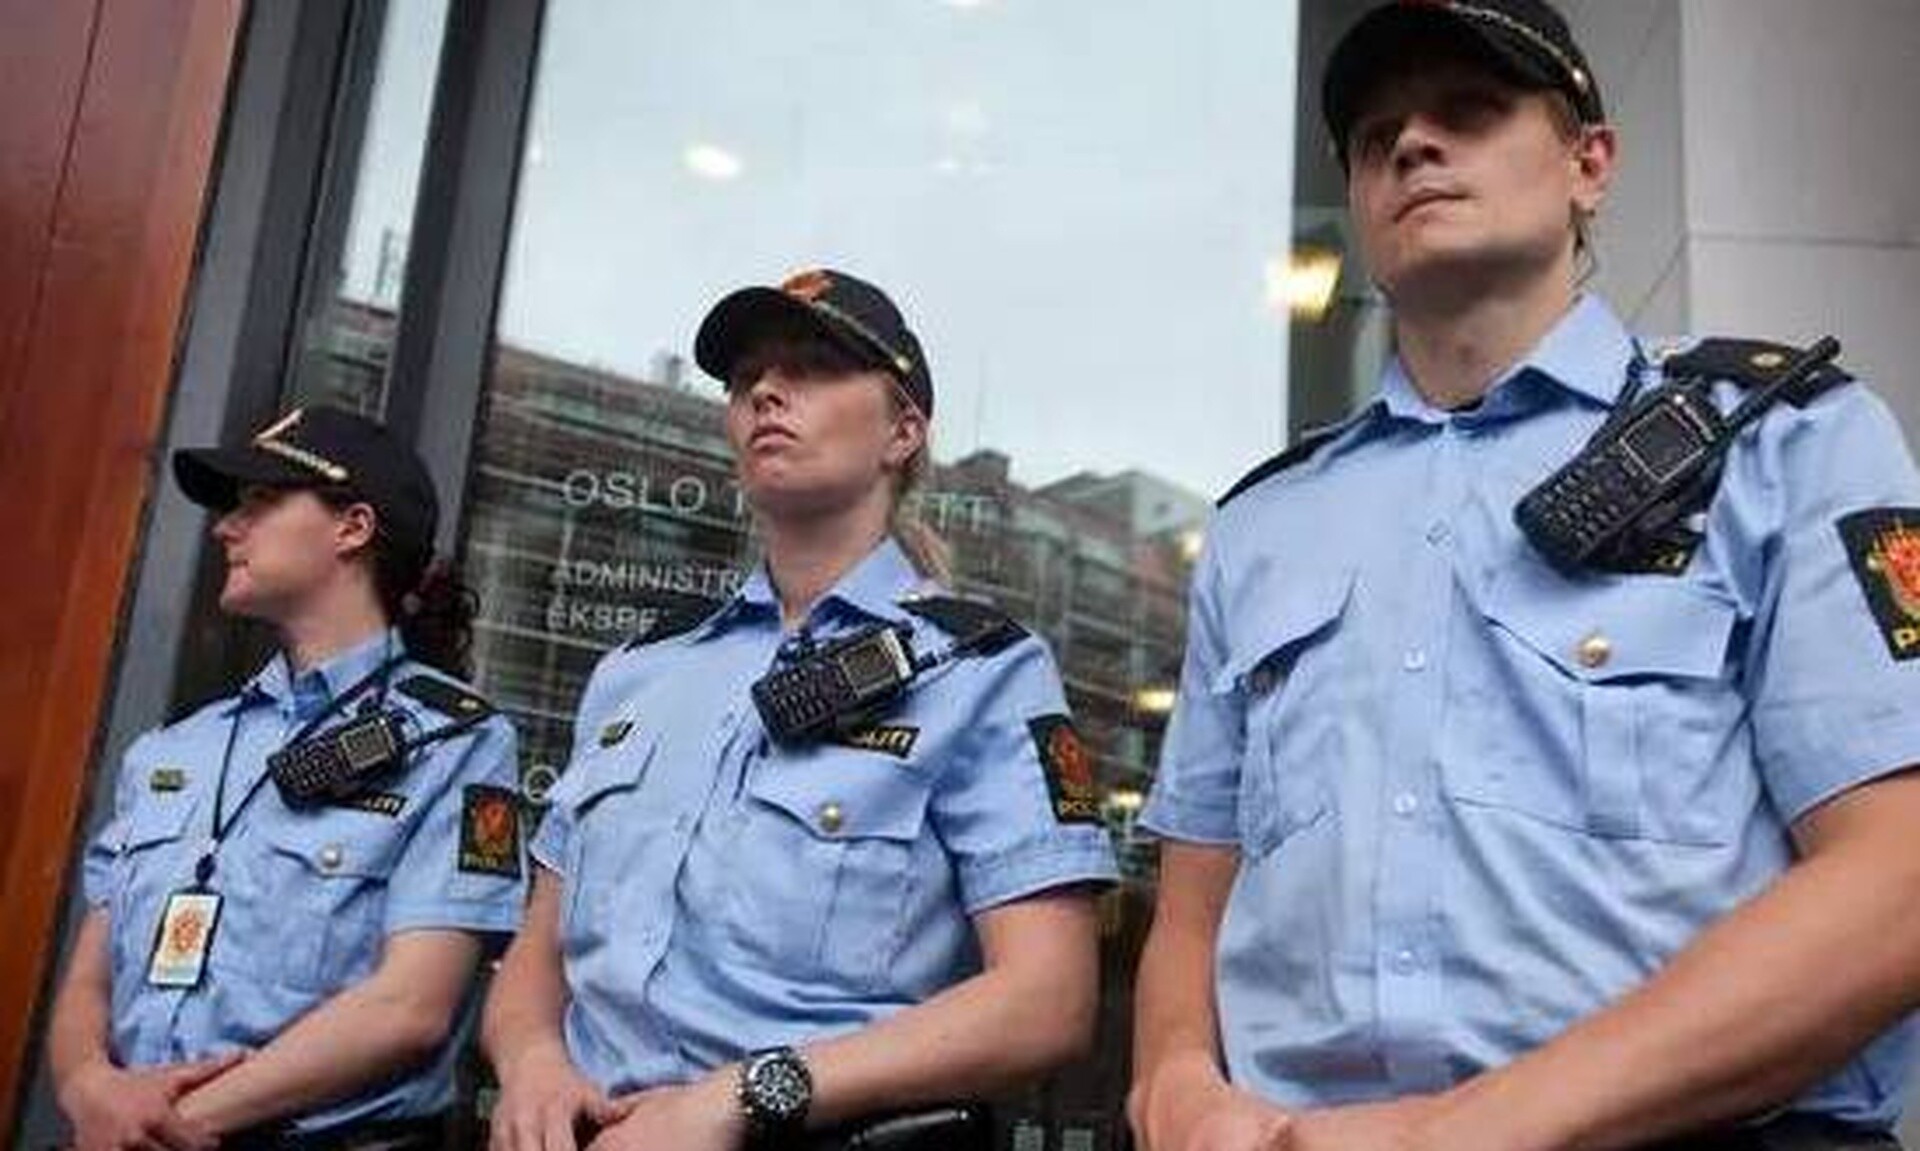 Νορβηγία: Οι αστυνομικοί θα φέρουν όπλα μέχρι νεωτέρας λόγω απειλής εναντίον τζαμιών